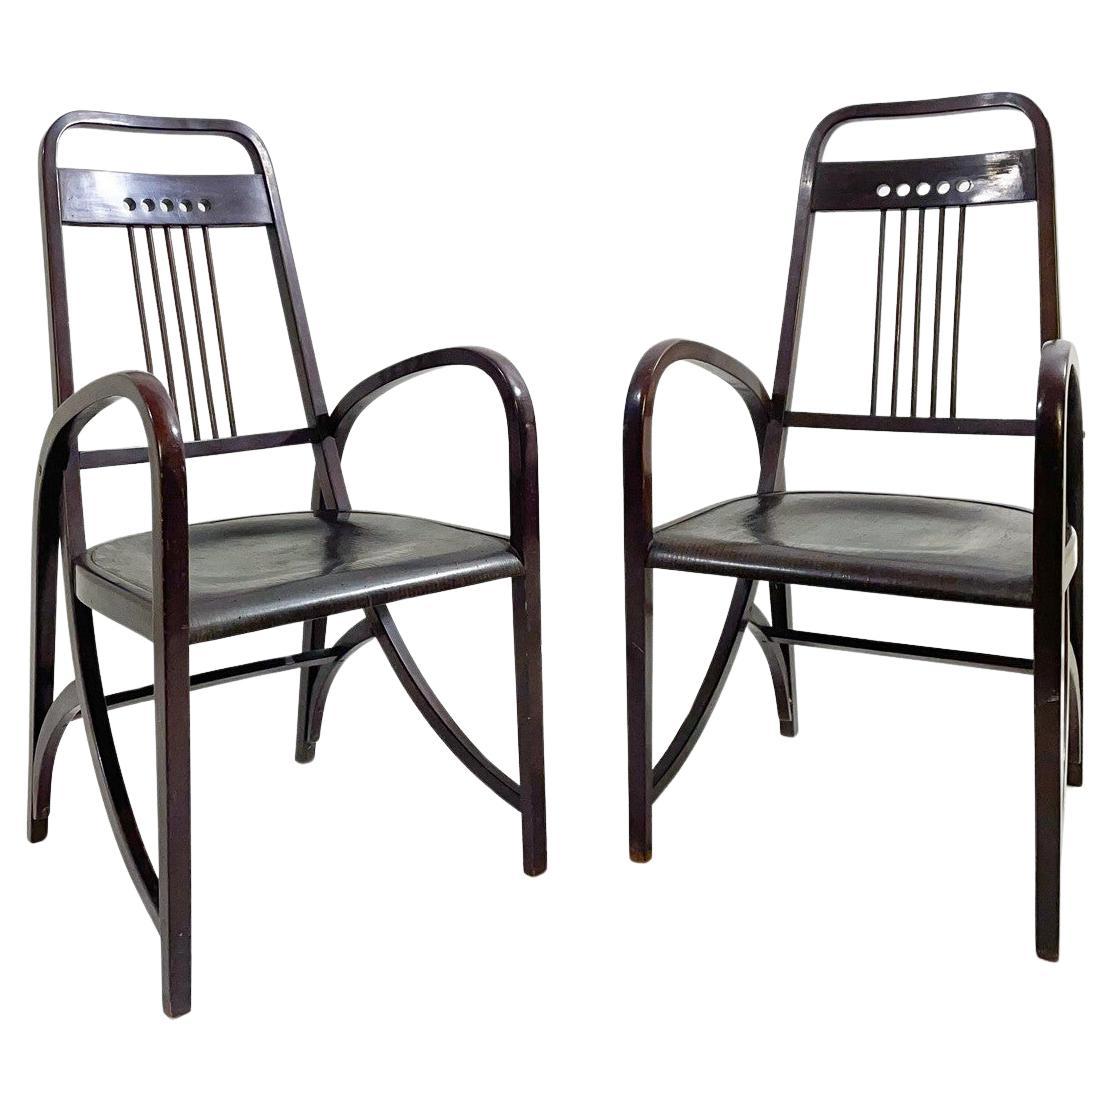 Paire de fauteuils Mod 1511 de Thonet, années 1900